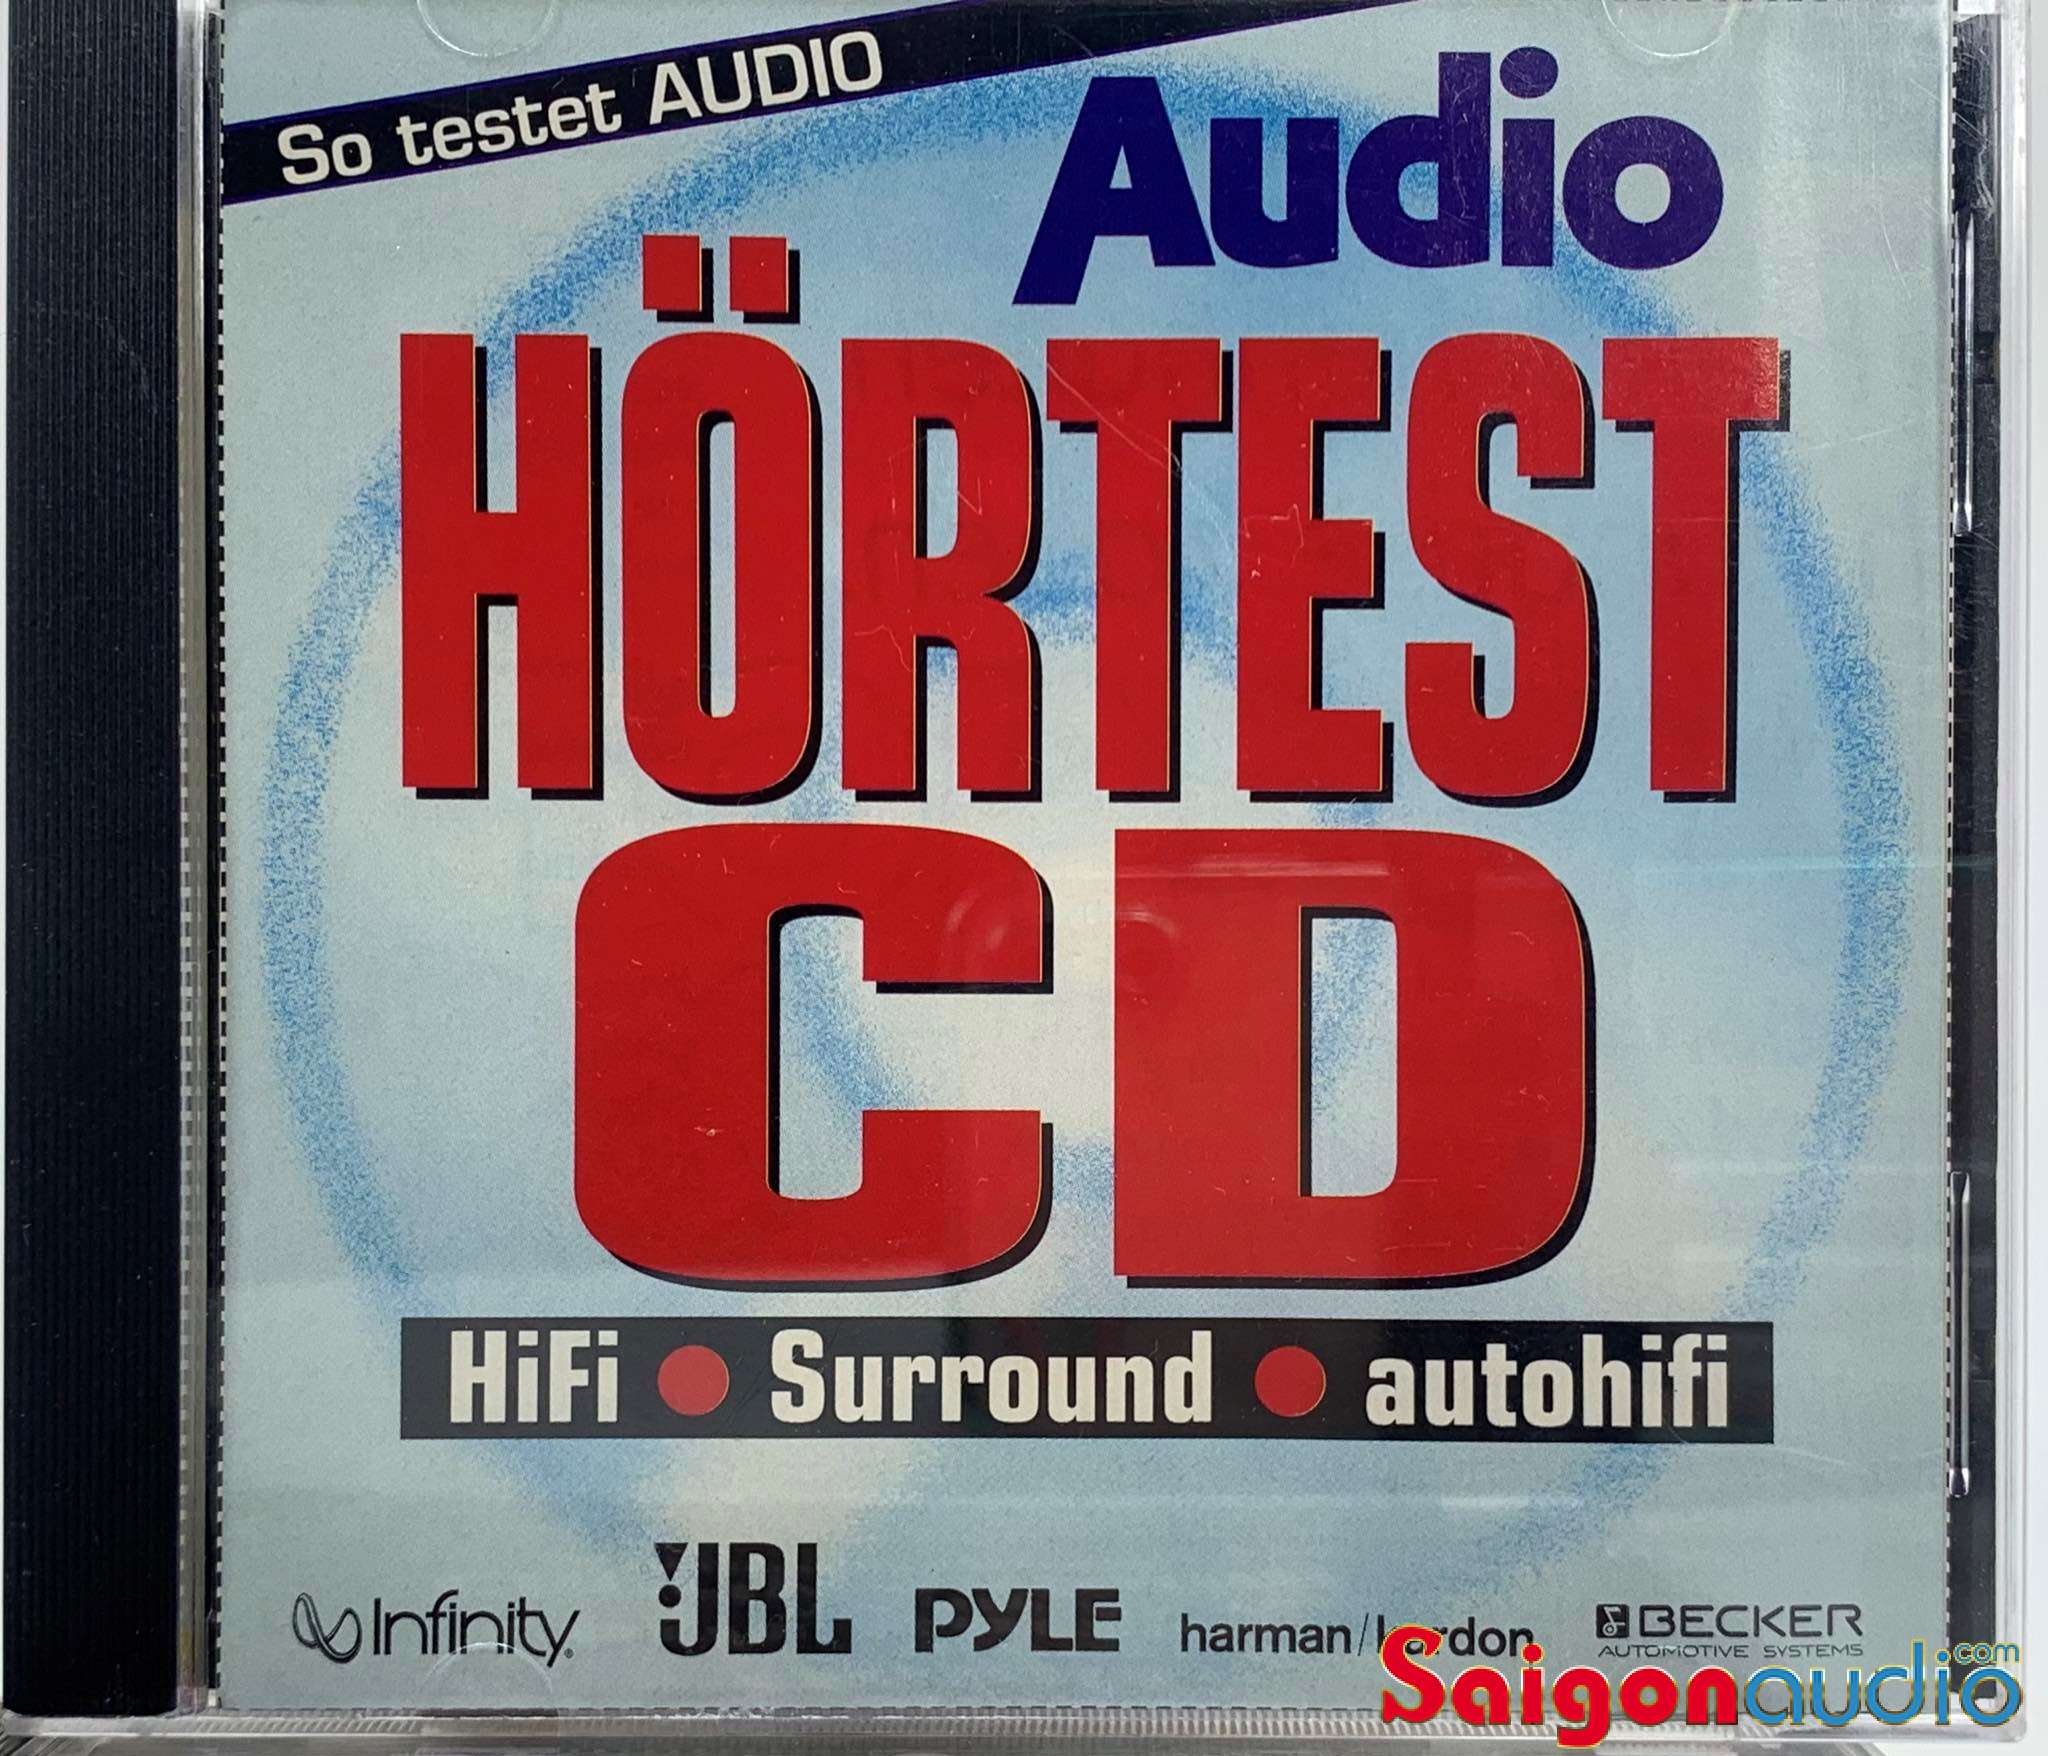 Đĩa CD gốc test dàn/ tần số Super Hörtest CD für HiFi • Surround • Autohifi (Free ship khi mua 2 đĩa CD cùng hoặc khác loại)